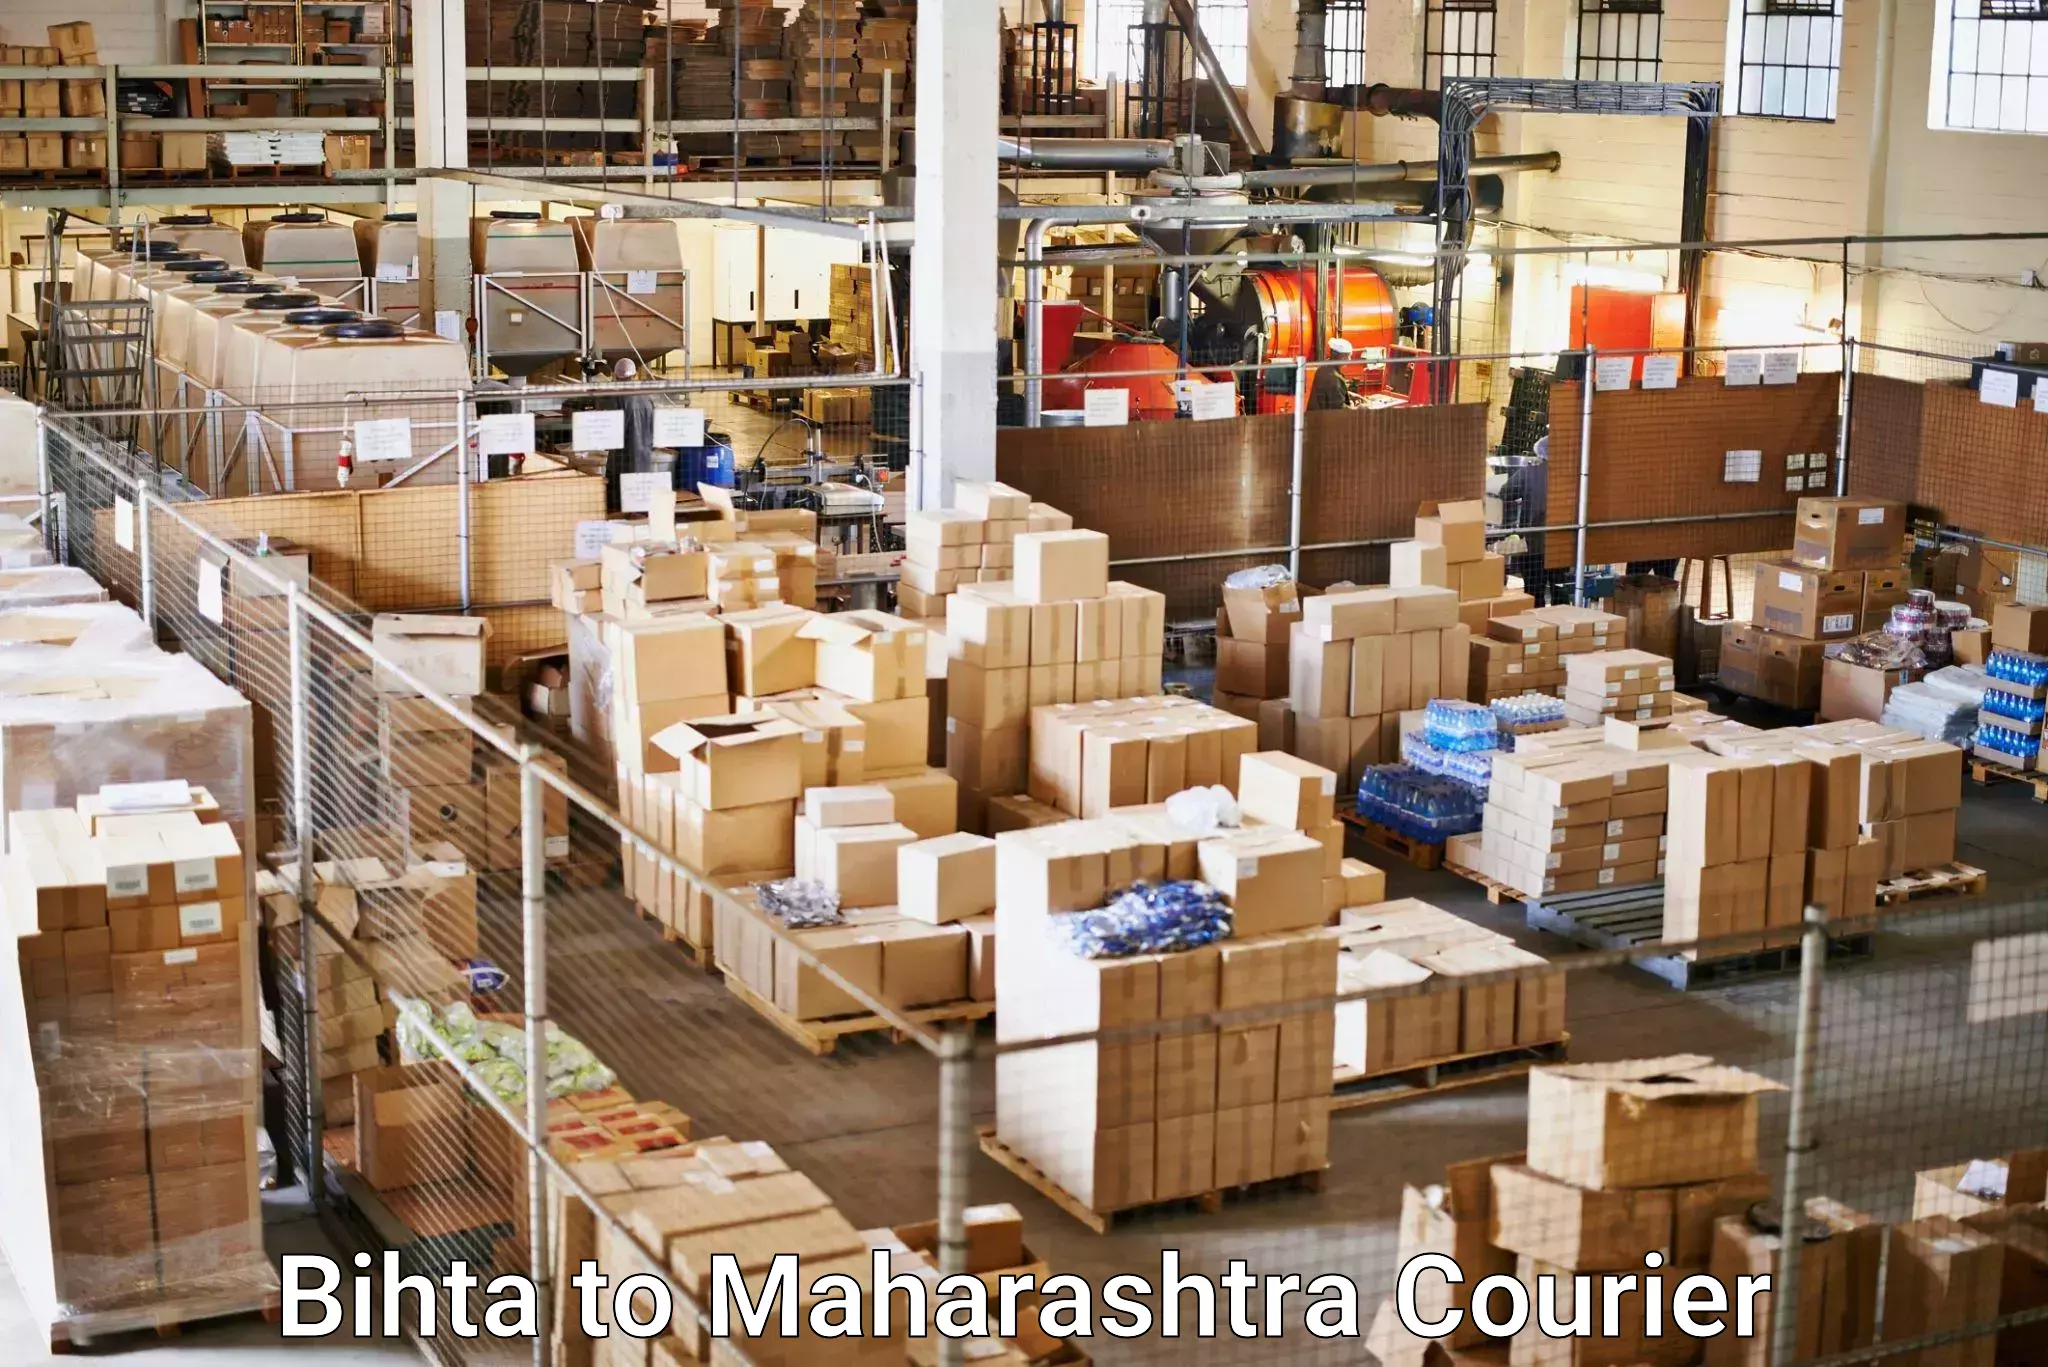 Premium courier solutions Bihta to Borivali